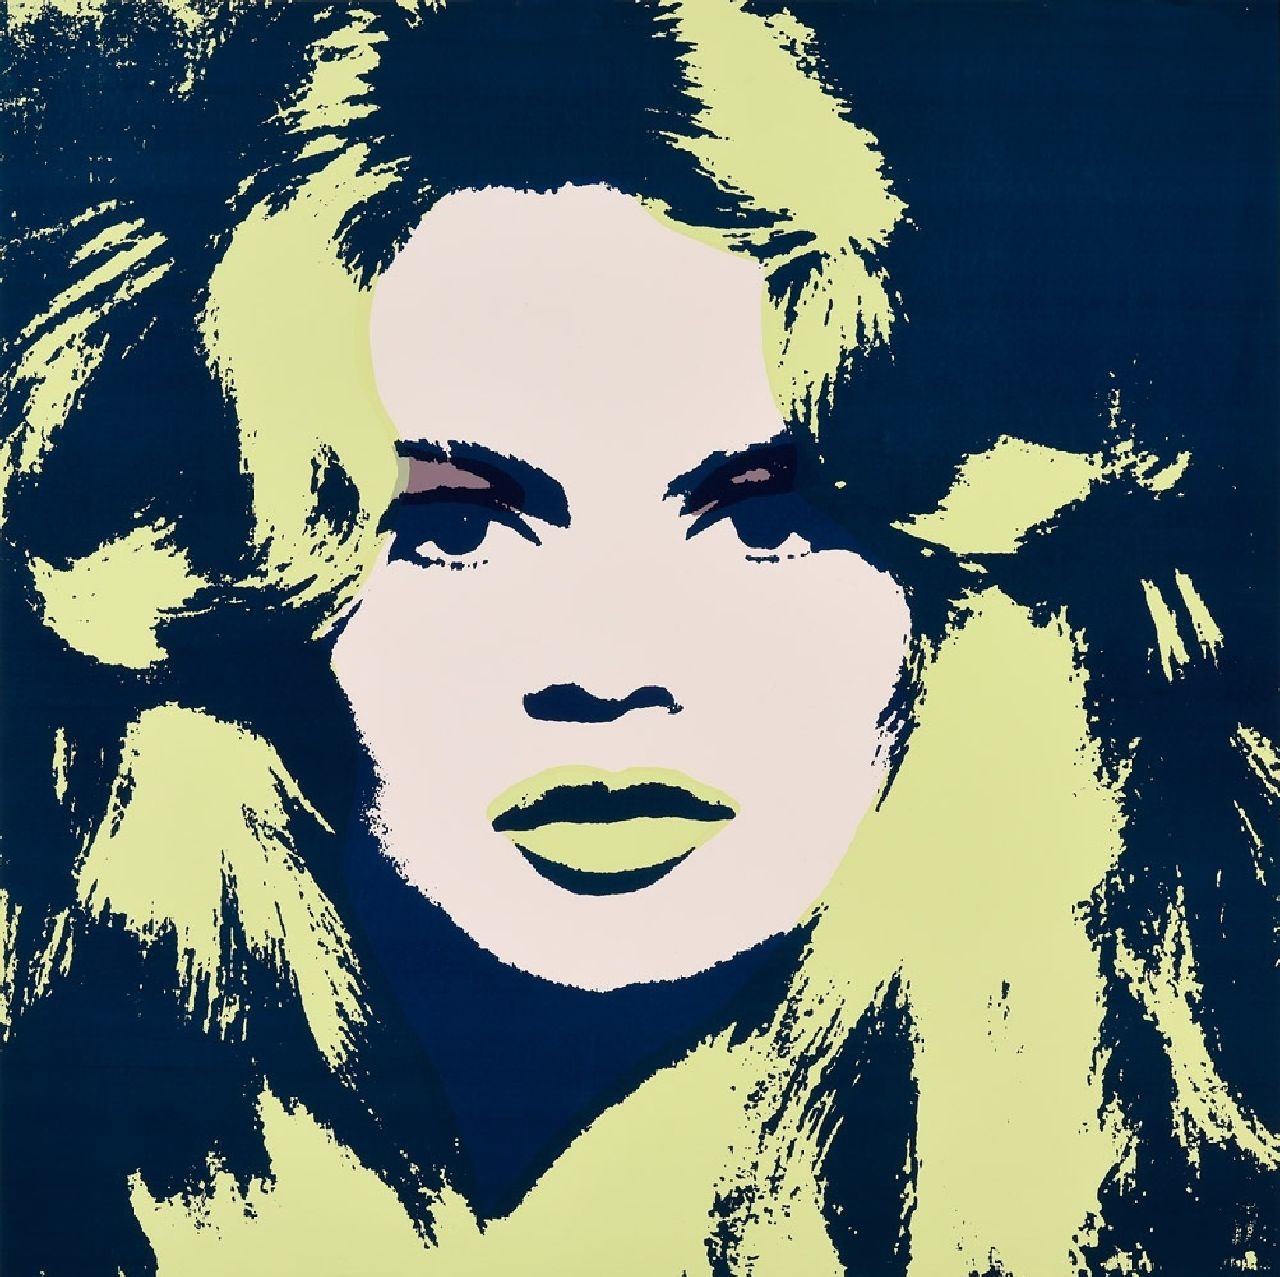 Naar Andy Warhol   | Naar Andy Warhol | Grafiek te koop aangeboden | Brigitte Bardot, zeefdruk op papier 91,0 x 91,0 cm, prijs zonder lijst